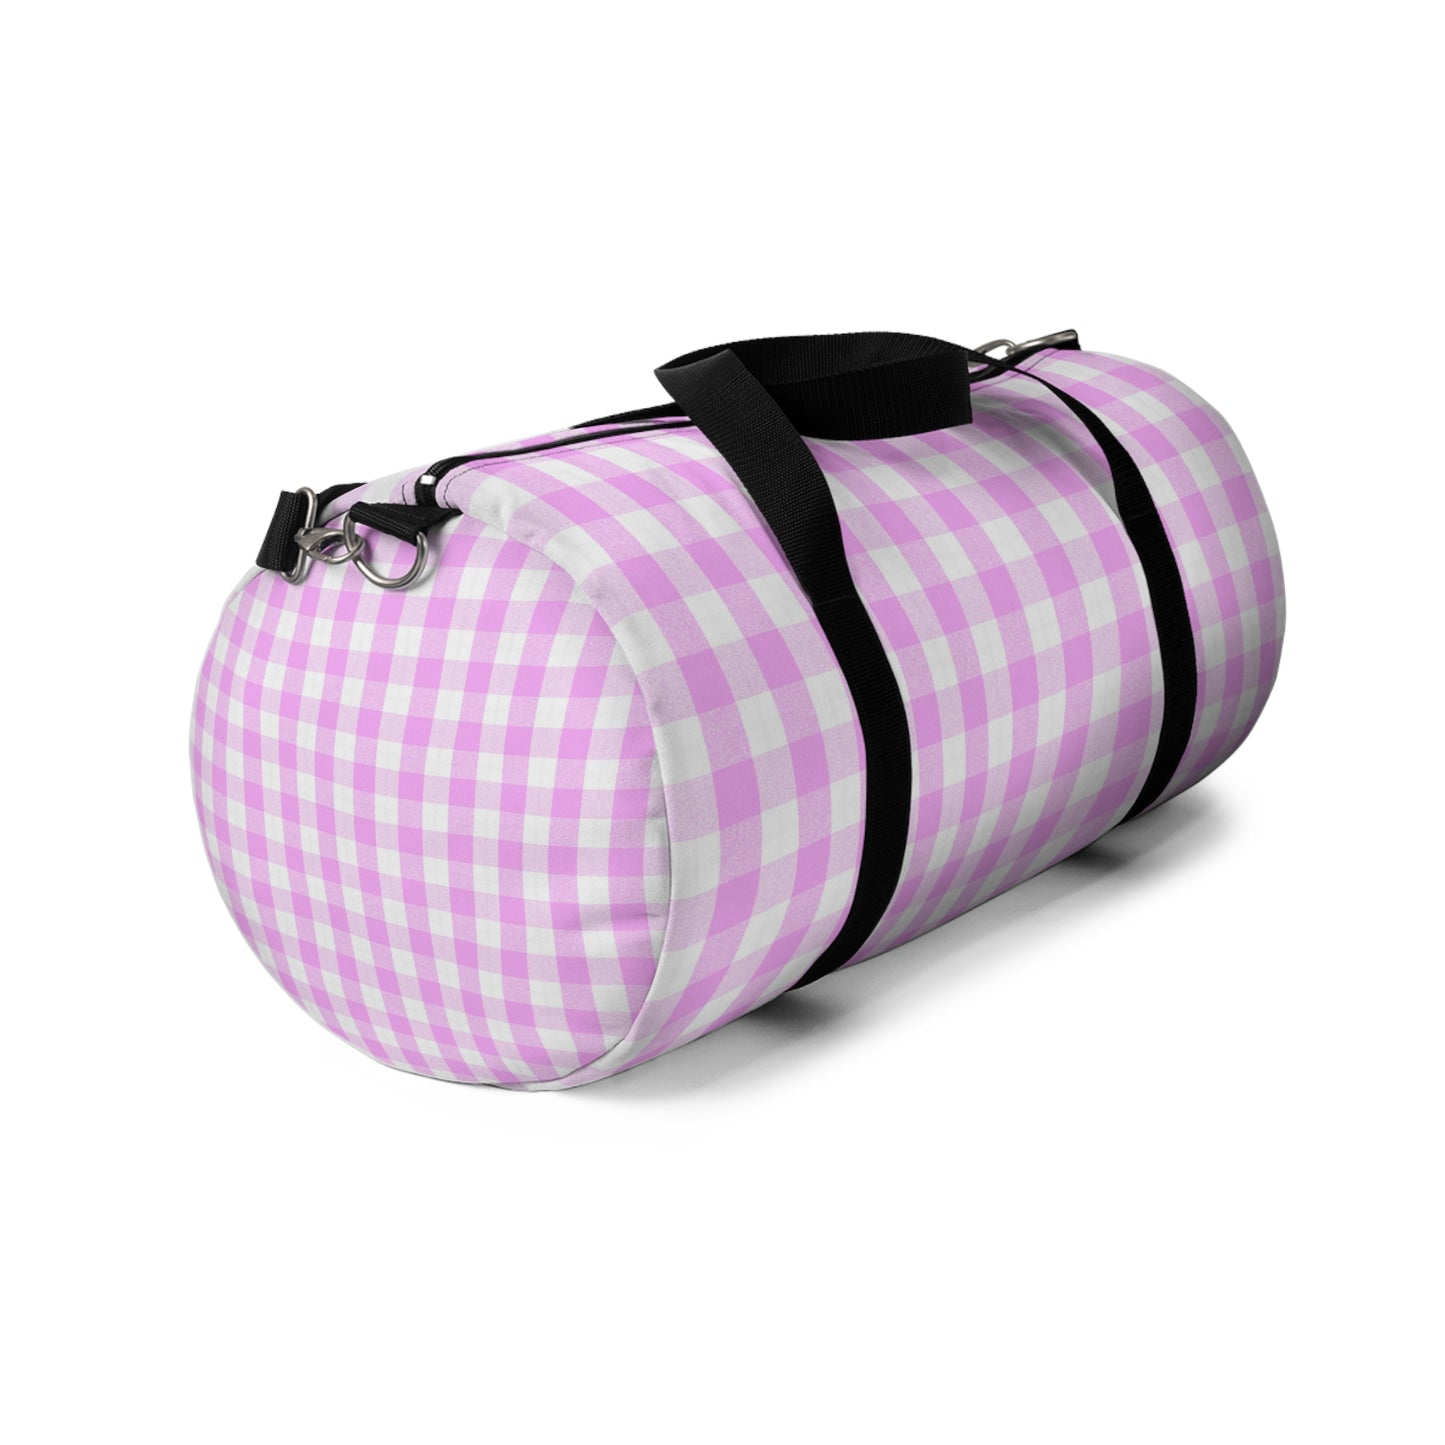 Pink Gingham Duffel Bag